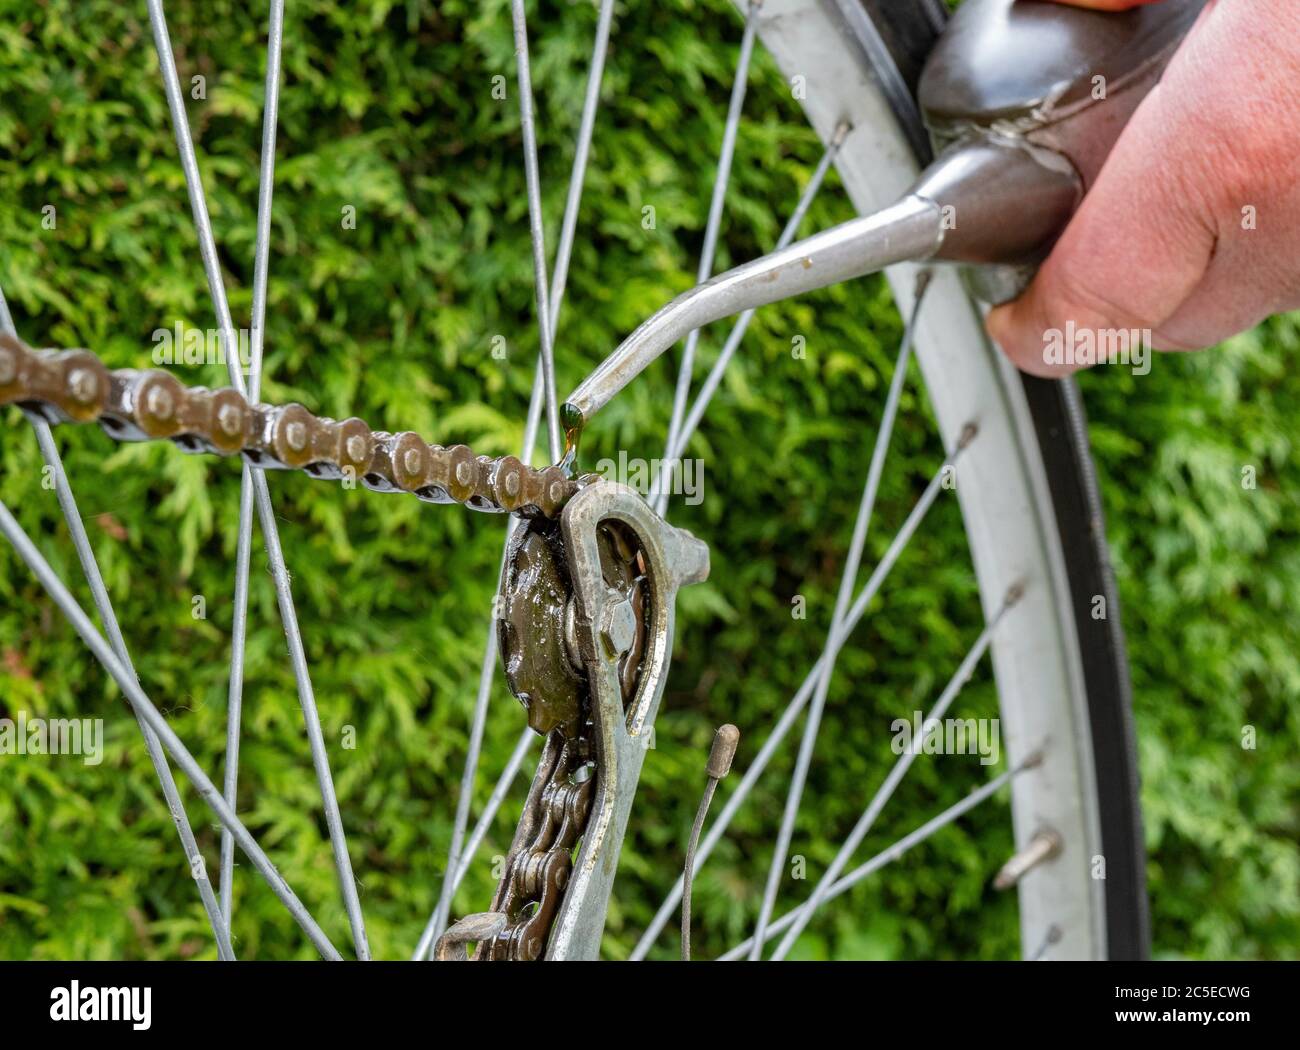 Nahaufnahme einer Menschenhand, die ein Rinnsal Öl aus einer alten Dose mit einem schmalen Auslauf auf die Kette und das Zahnrad eines Fahrrads gießt, um den Mechanismus zu schmieren. Stockfoto